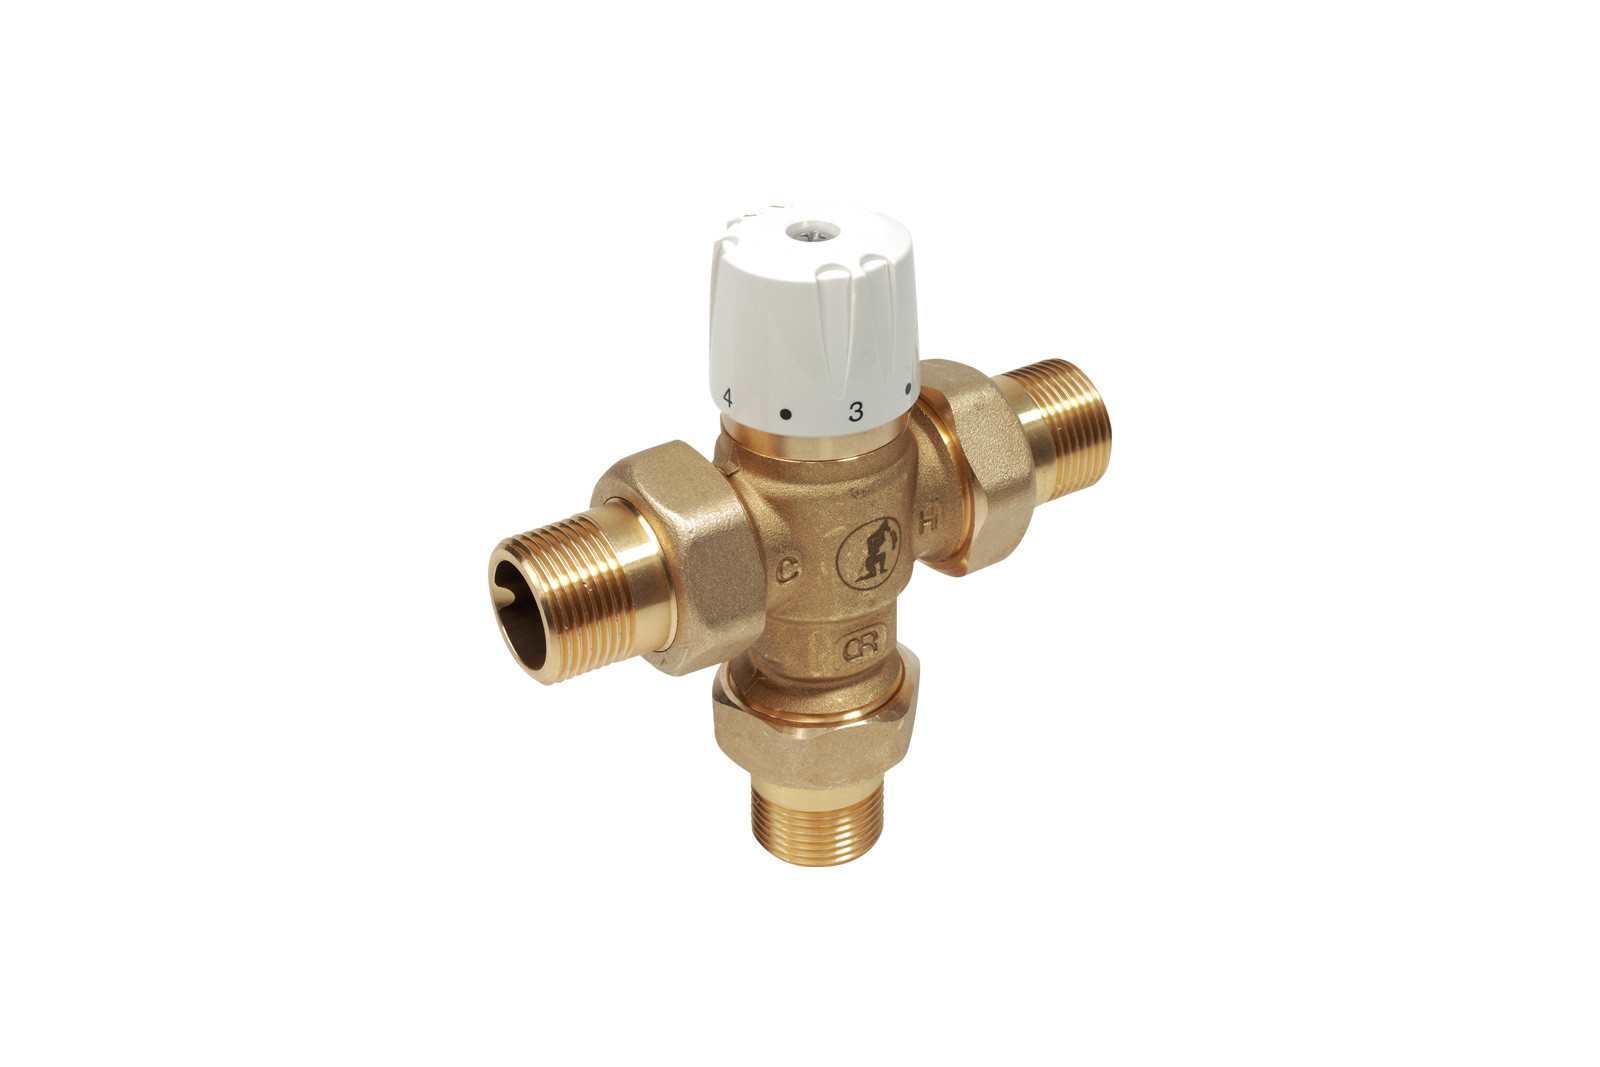 R156Y224 - směšovací termostatický ventil se šroubeními pro rozvody sanity s havarijní funkcí při výpadku dodávky studené vody